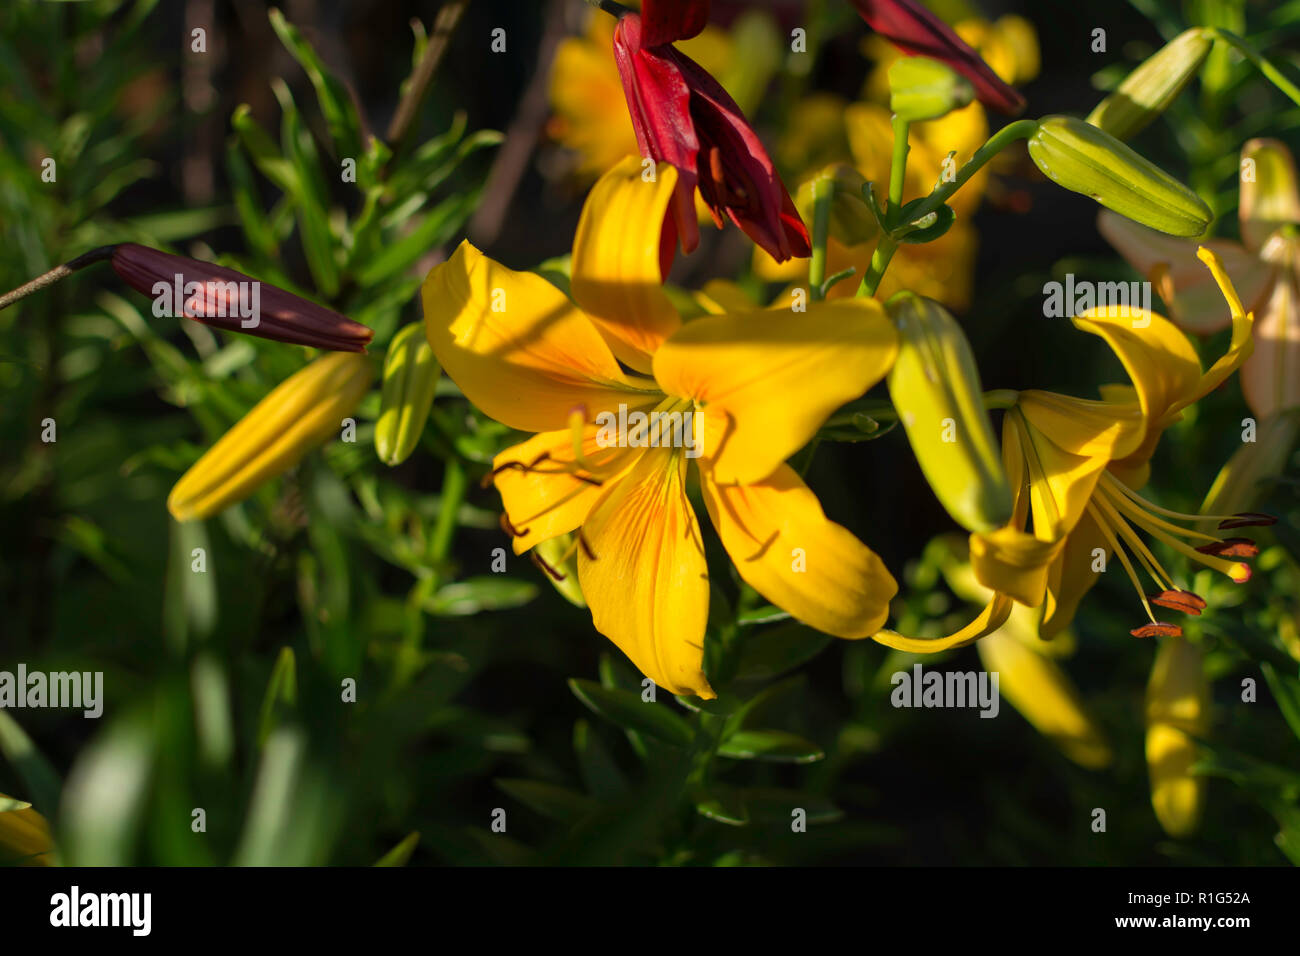 Helle gelbe Lilie (Lilium) Blüte beschattet, aber mit dem Strahl des Sonnenlichts auf seine Blütenblätter. Lilie Blume symbolisiert Reinheit und raffinierte Schönheit. Stockfoto